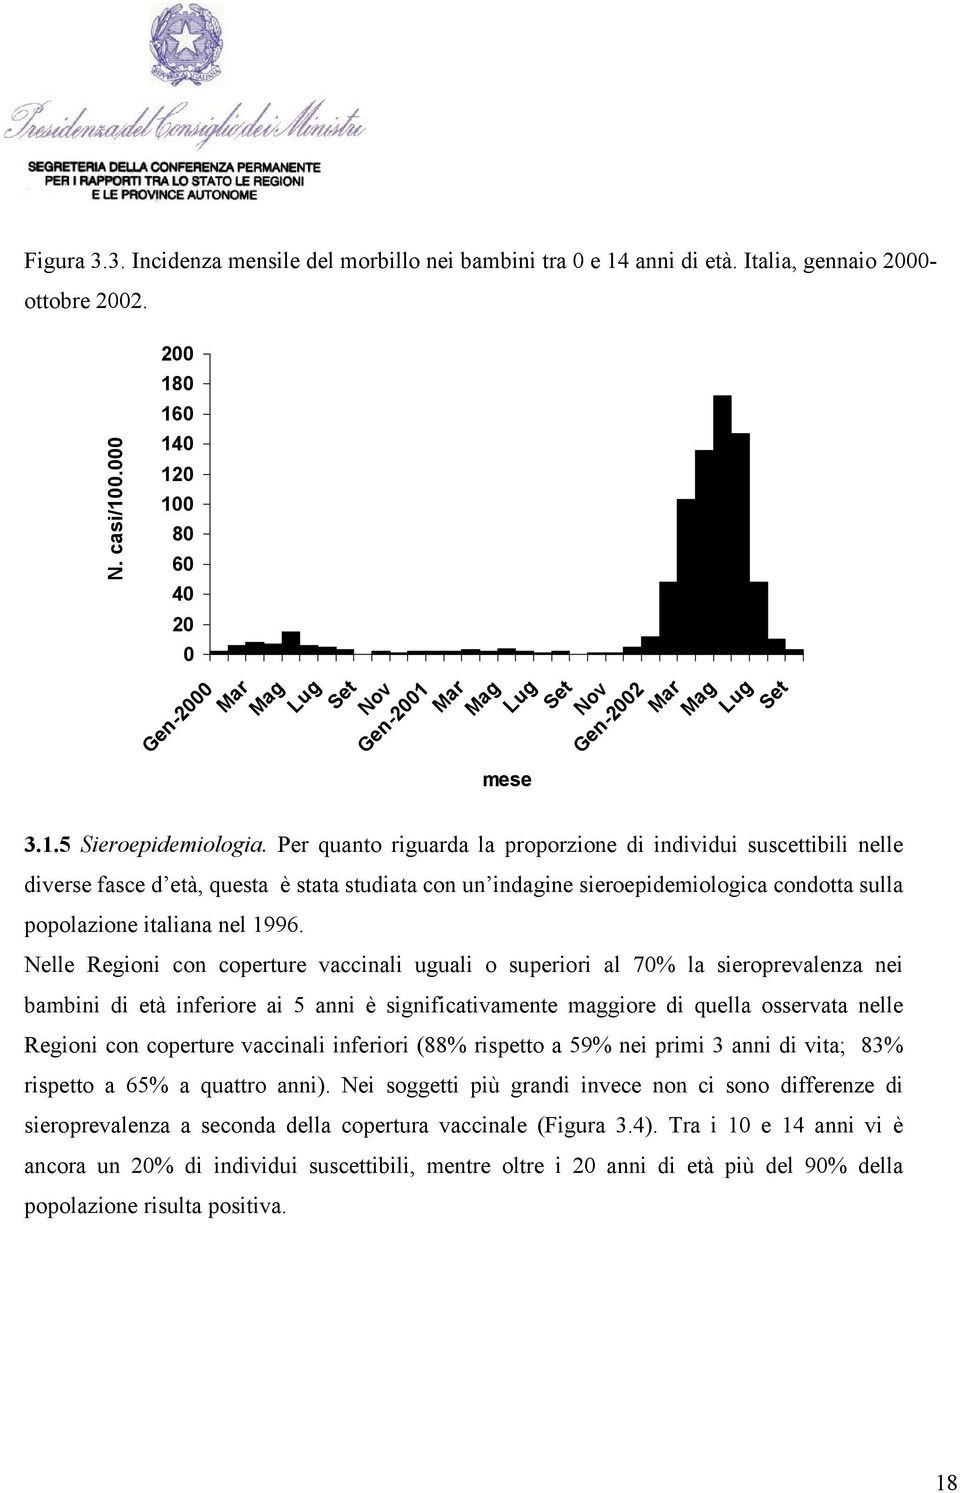 Per quanto riguarda la proporzione di individui suscettibili nelle diverse fasce d età, questa è stata studiata con un indagine sieroepidemiologica condotta sulla popolazione italiana nel 1996.